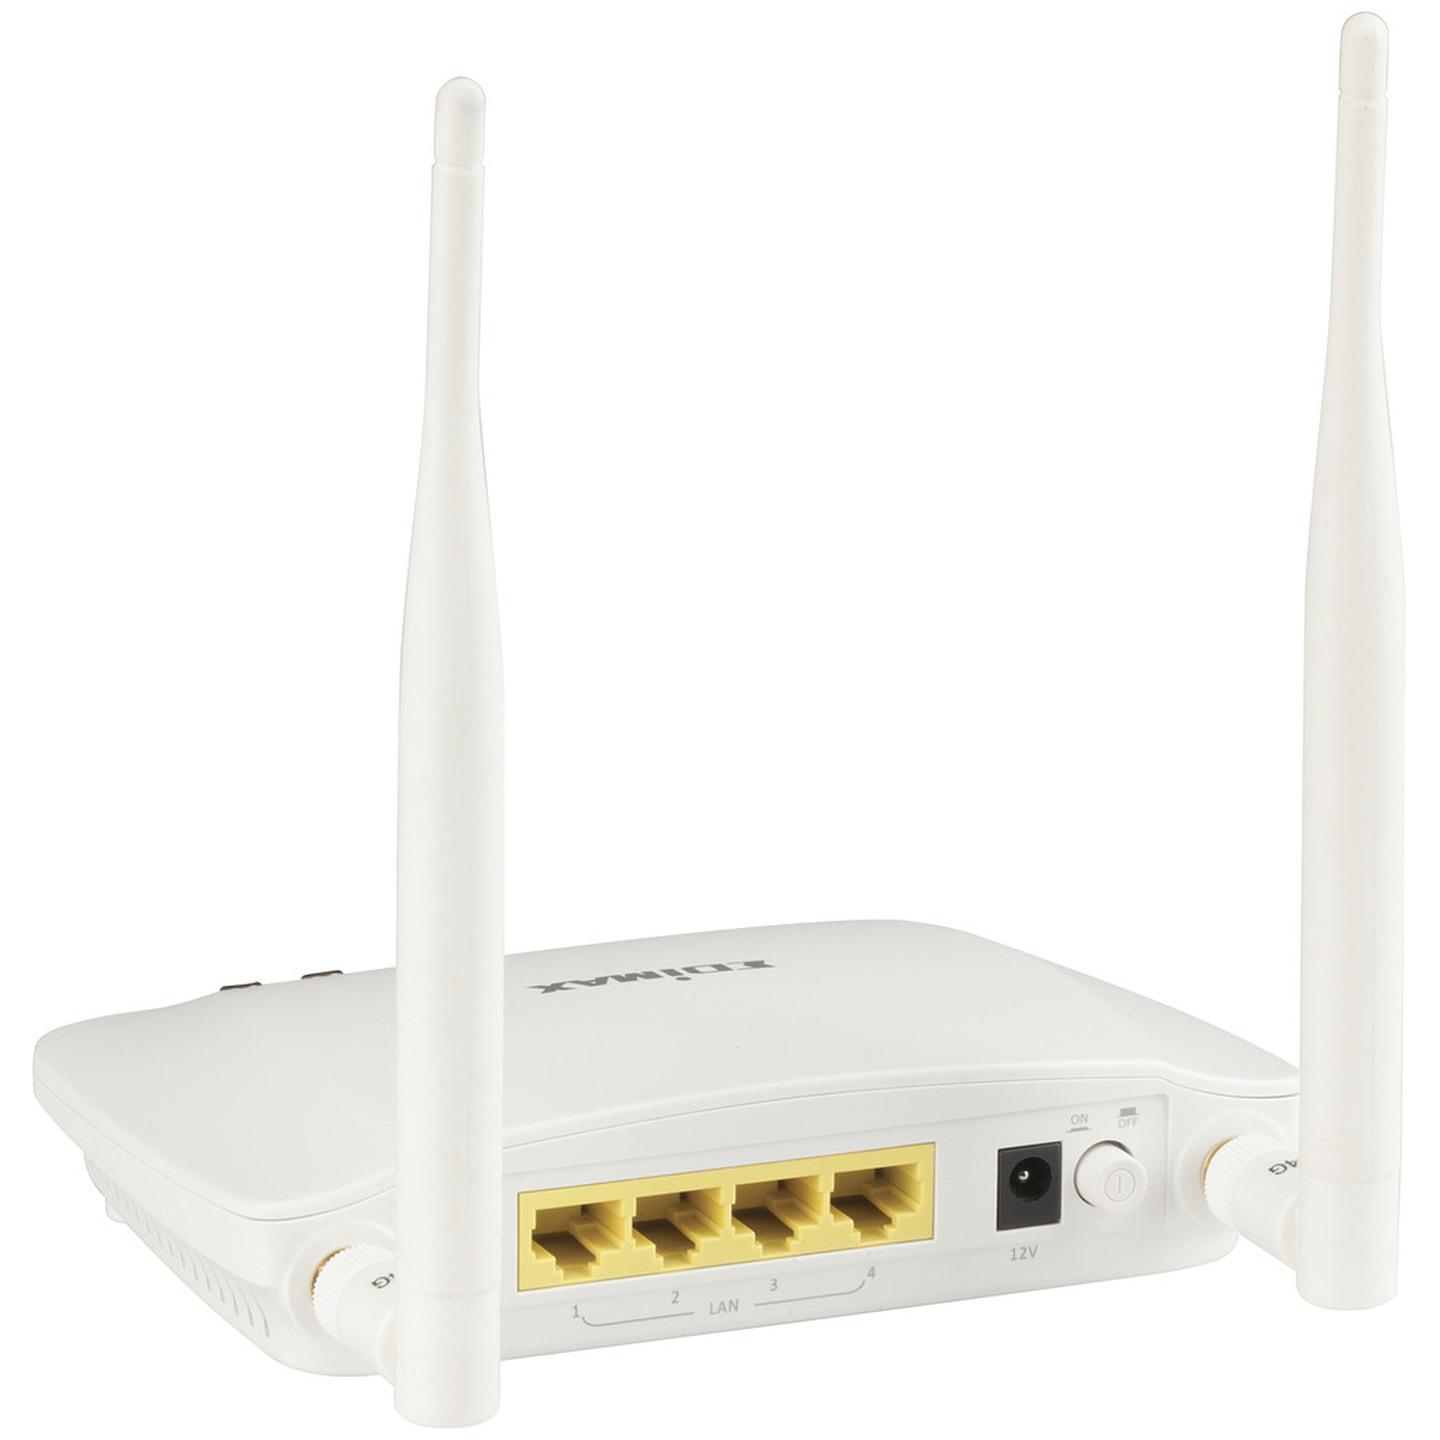 Wireless N300 ADSL2 Modem Router with USB Storage